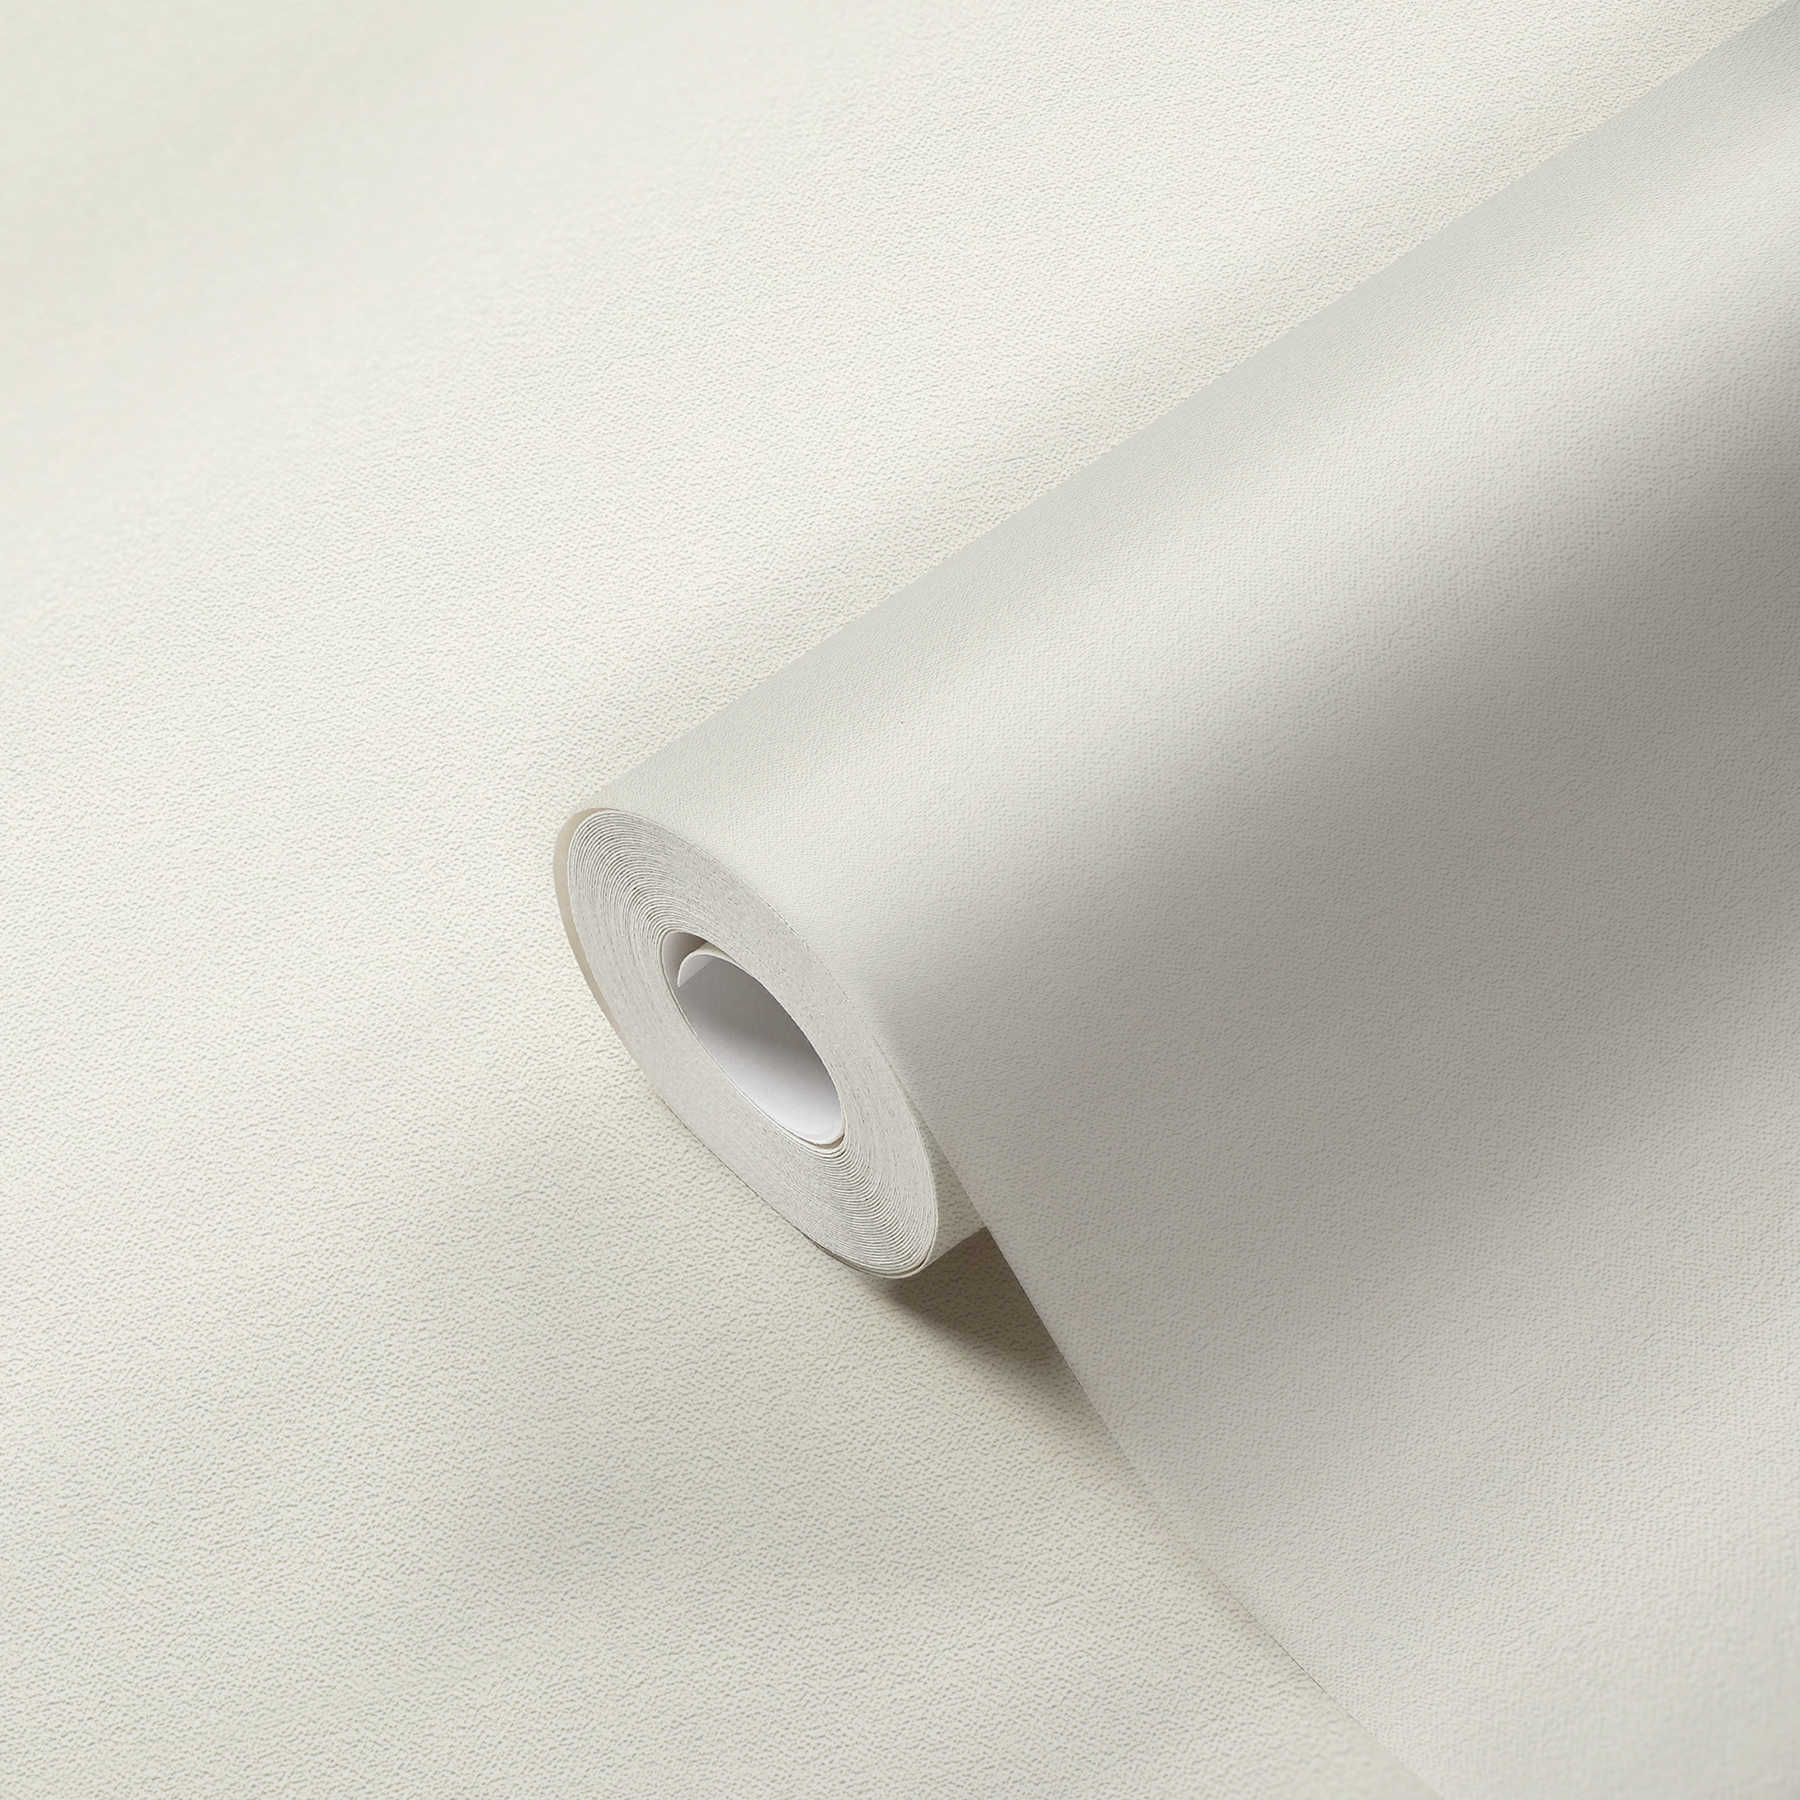             Papel pintado no tejido neutro blanco crema con estructura de espuma
        